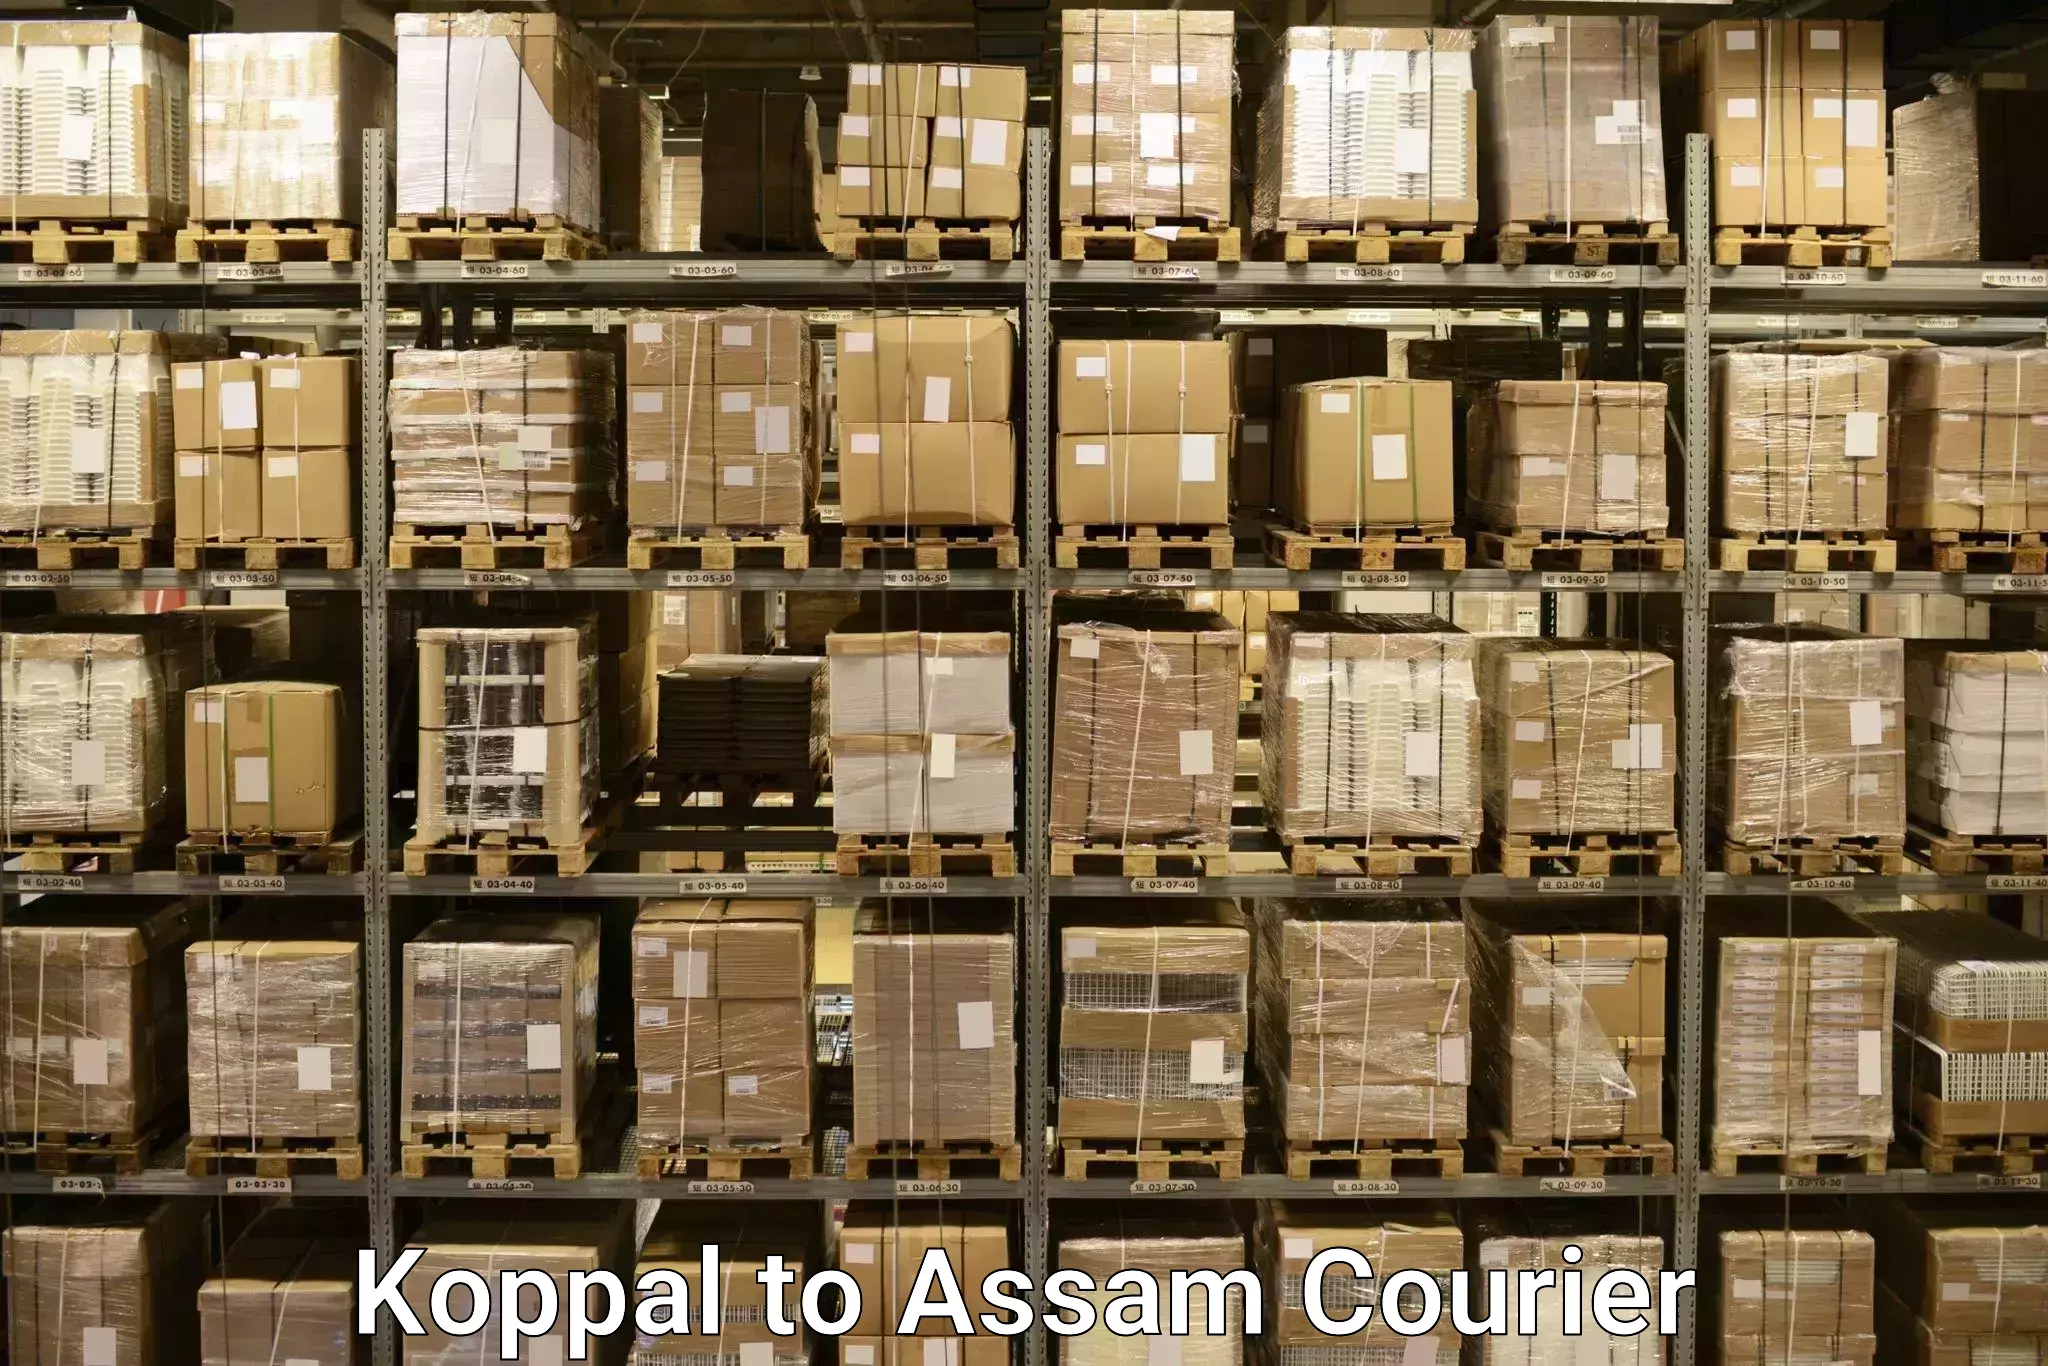 Door-to-door baggage service Koppal to Amoni